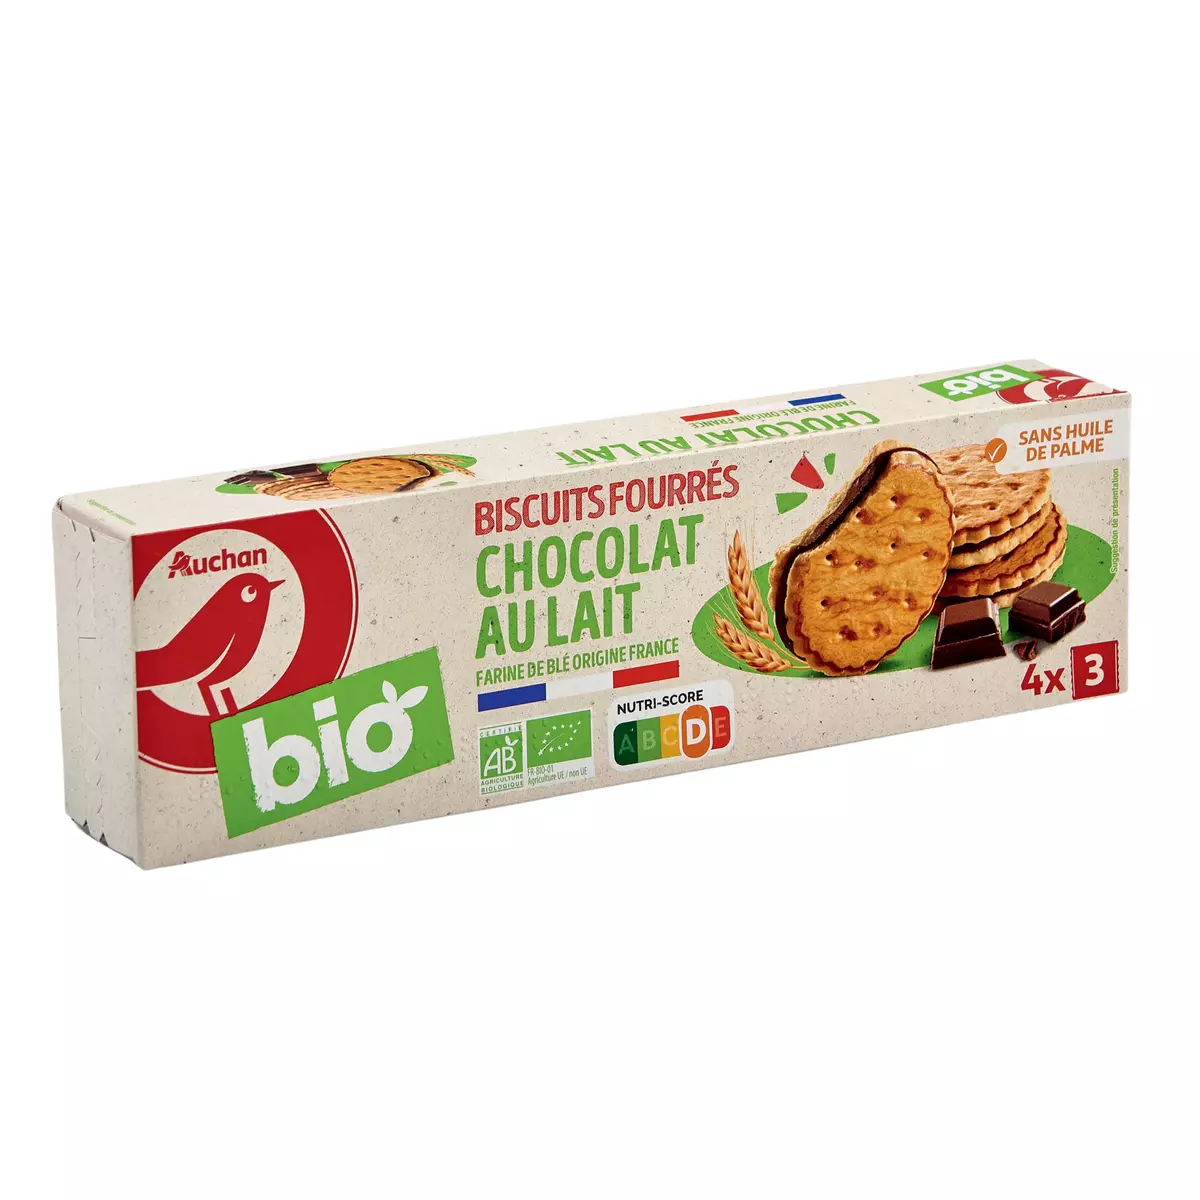 AUCHAN BIO Biscuits fourrés au chocolat au lait sachets fraîcheur 4x3 biscuits 185g